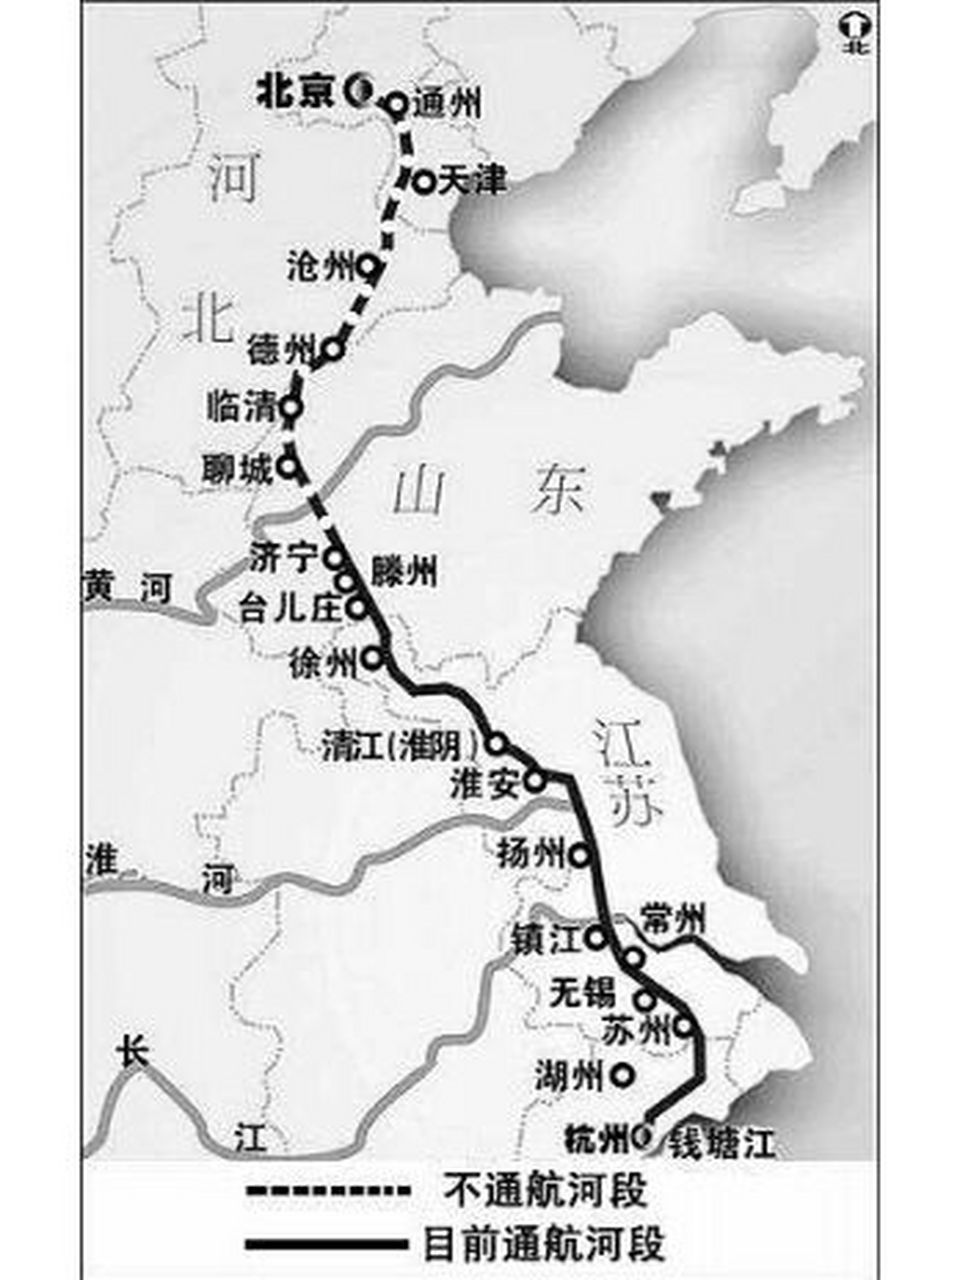 京杭大运河航线图图片